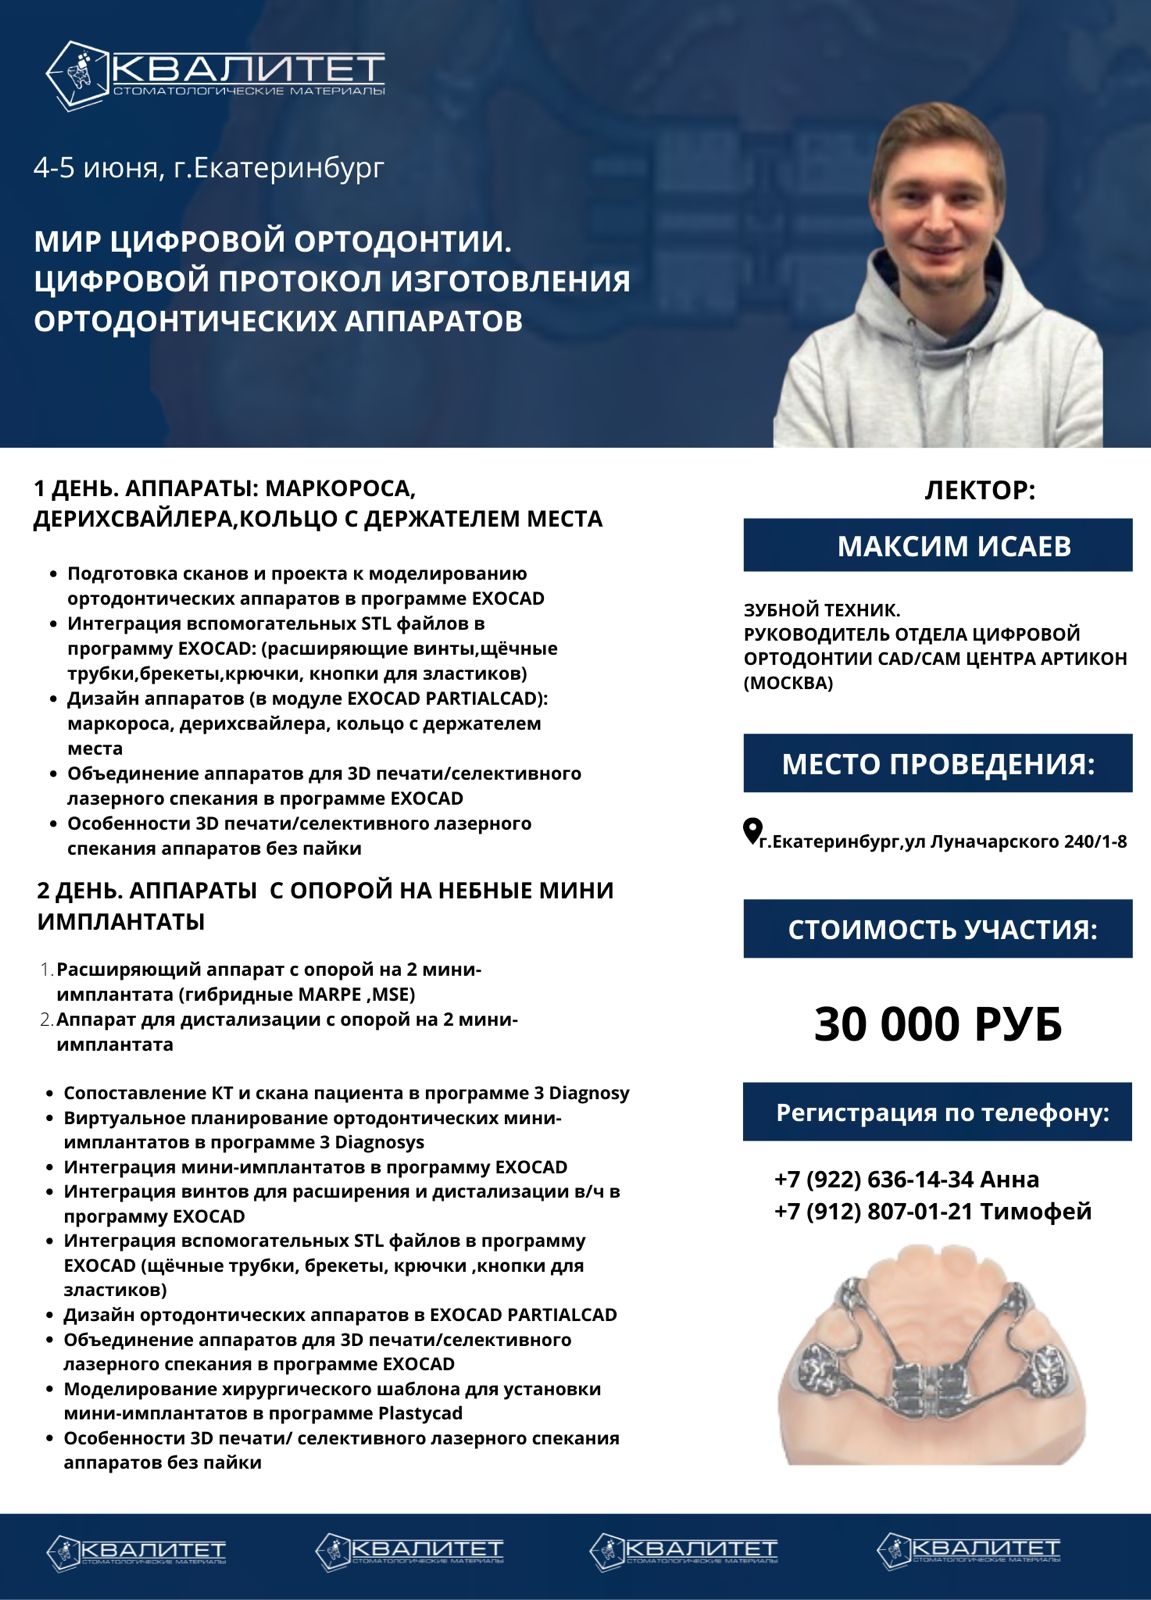 4-5 июня, г. Екатеринбург. Мир цифровой  ортодонтии. Цифровой протокол изготовления ортодонтических аппаратов. 